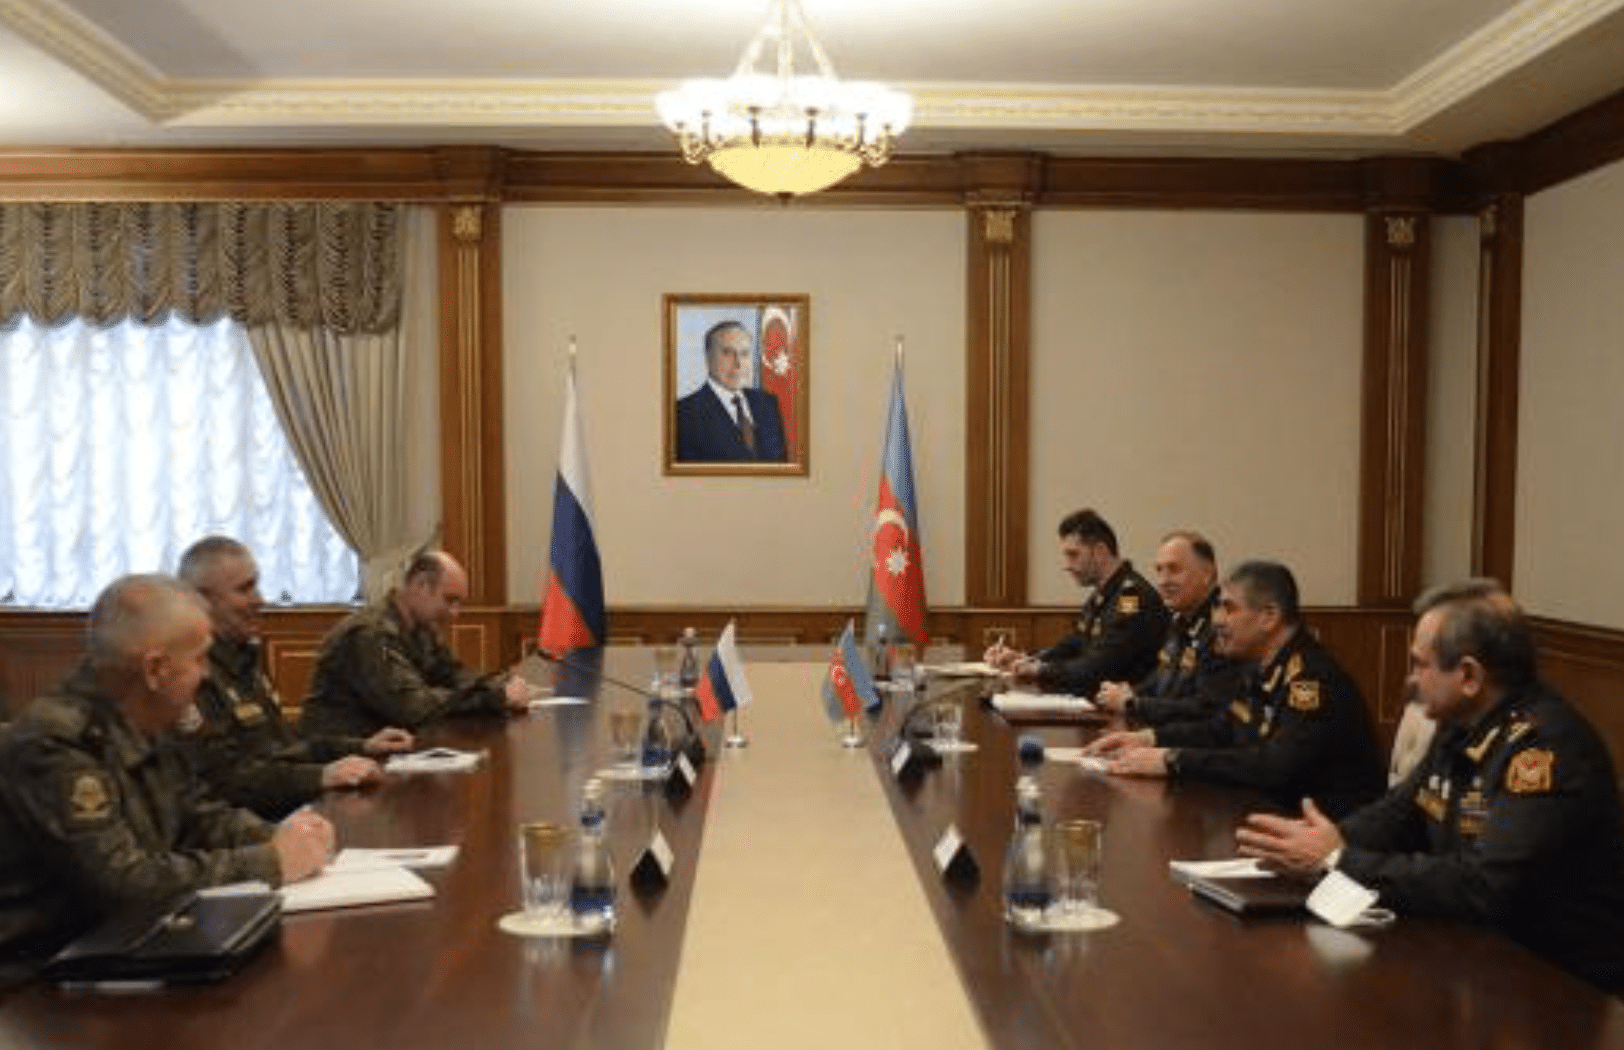 Զաքիր Հասանովն ընդունել է Արցախում ռուսական խաղաղապահ զորախմբի նոր հրամանատարին